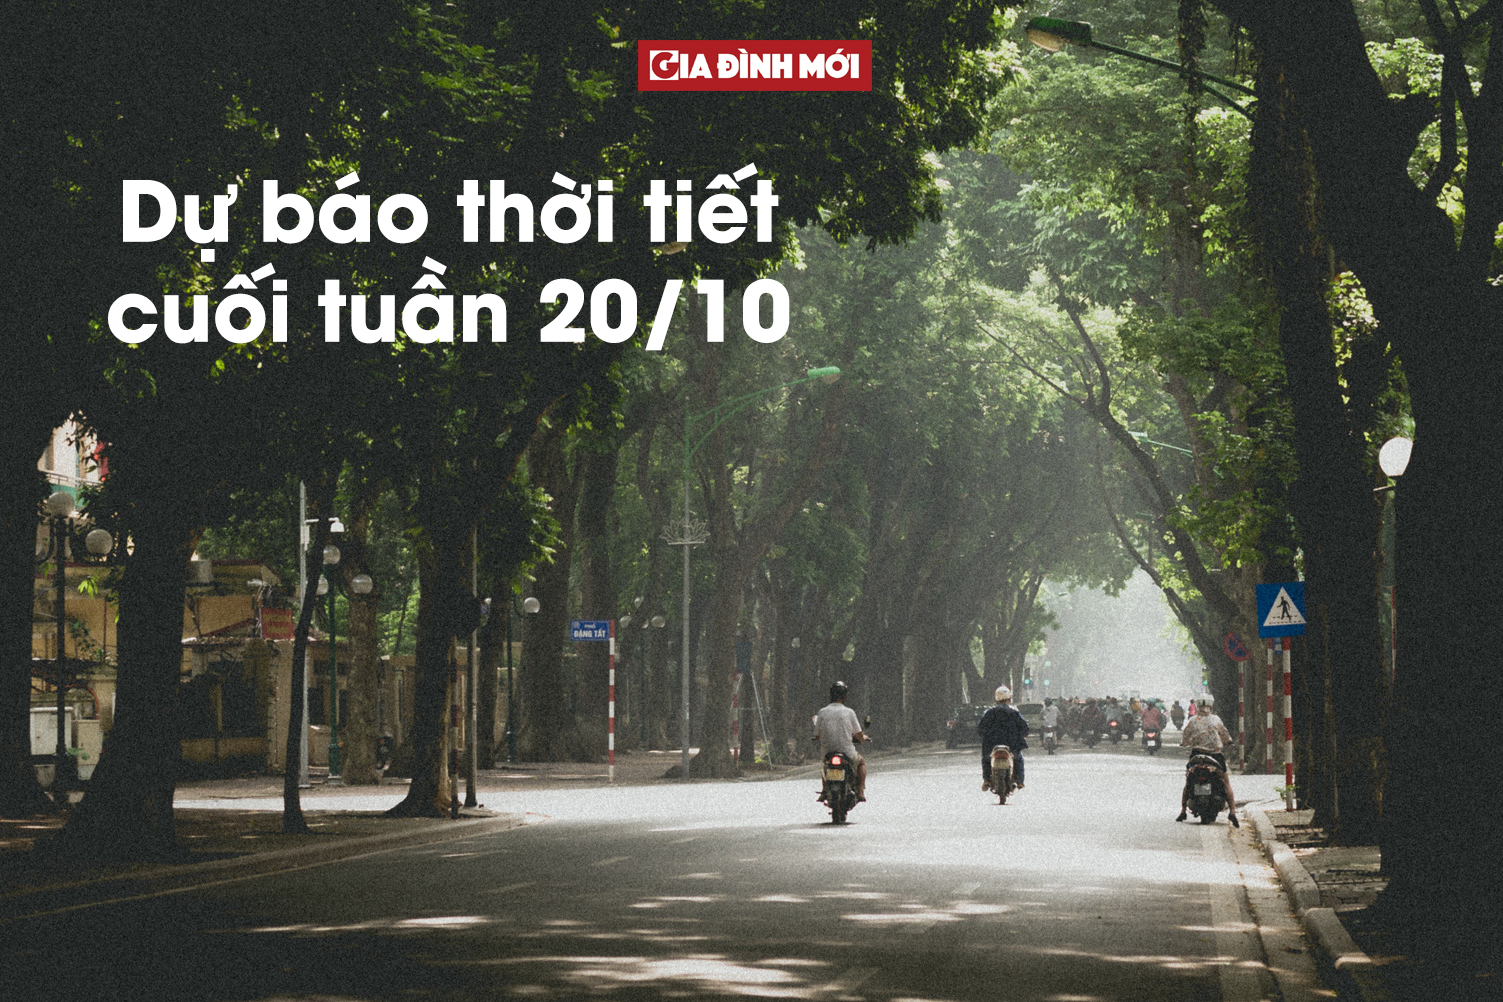   Miền Bắc có nơi trưa chiều hửng nắng, Hà Nội có mưa rào rải rác.  